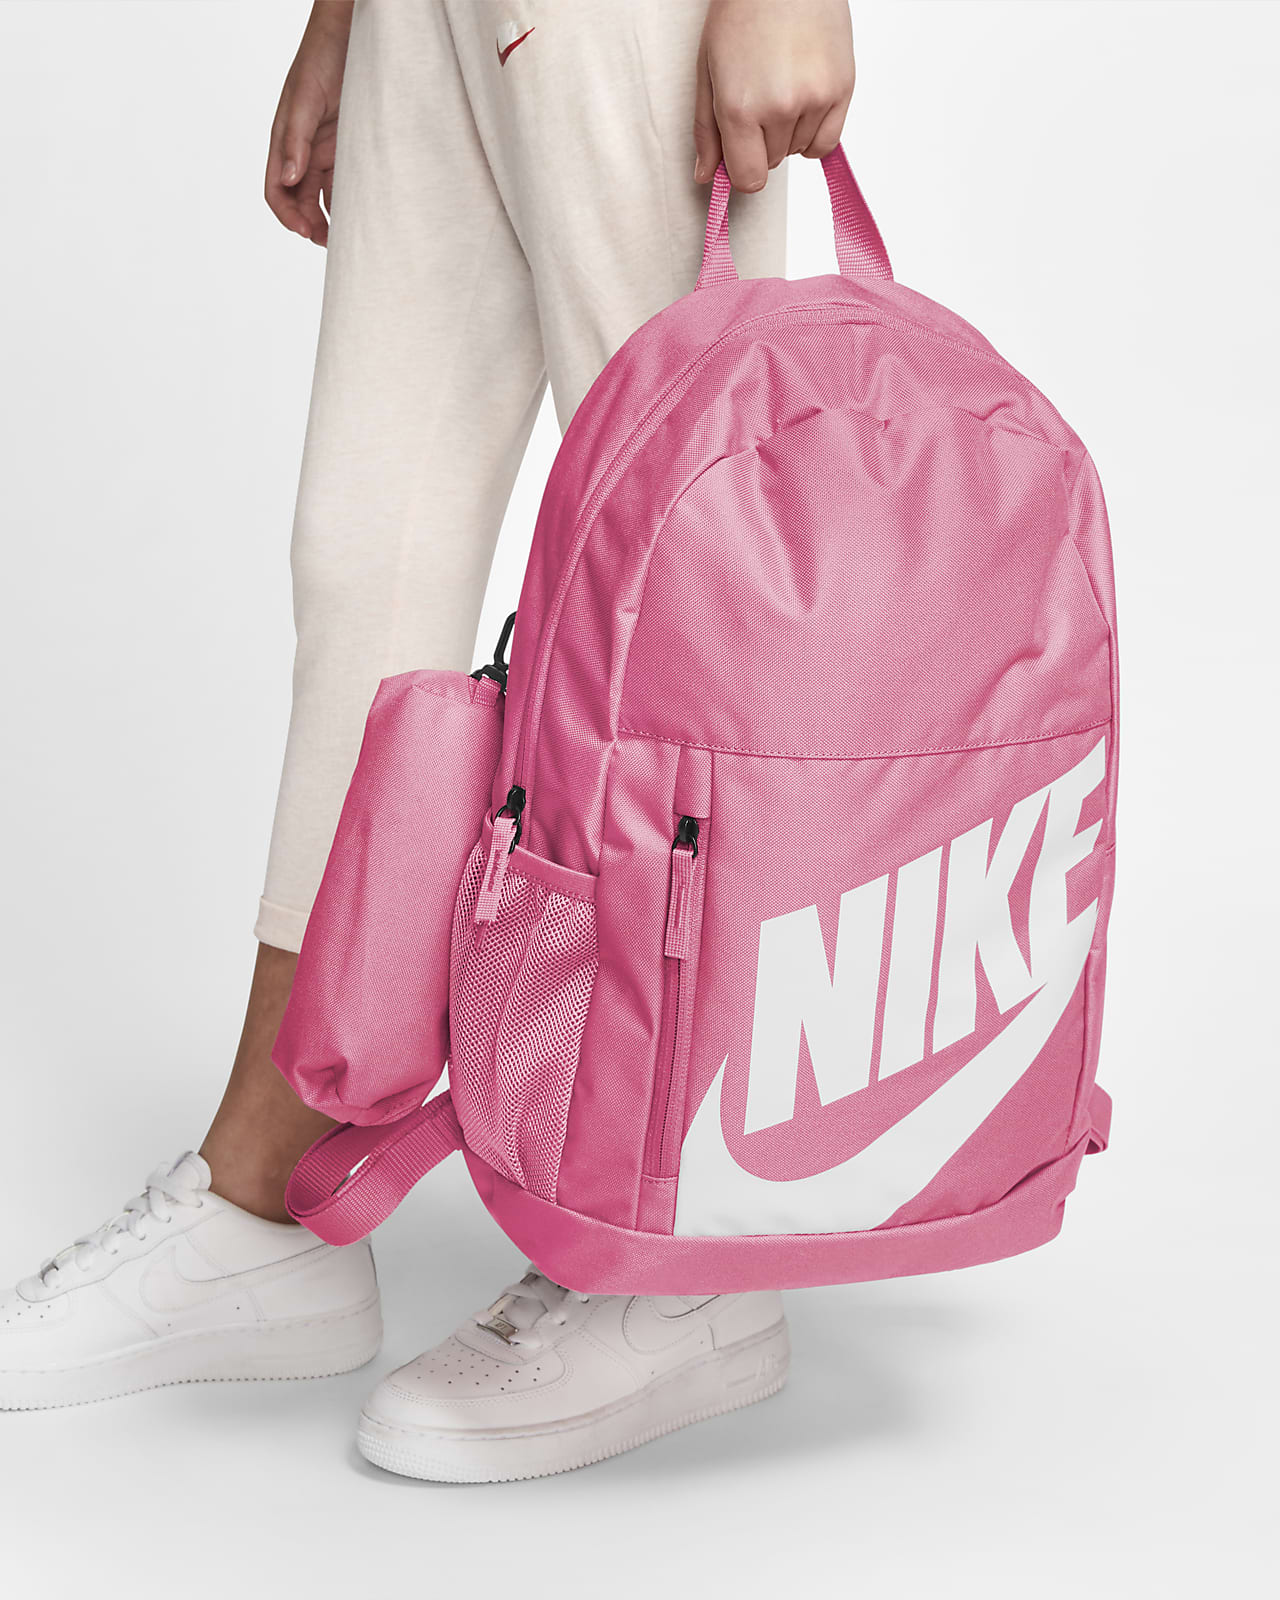 Nike Kids' Backpack. Nike AU